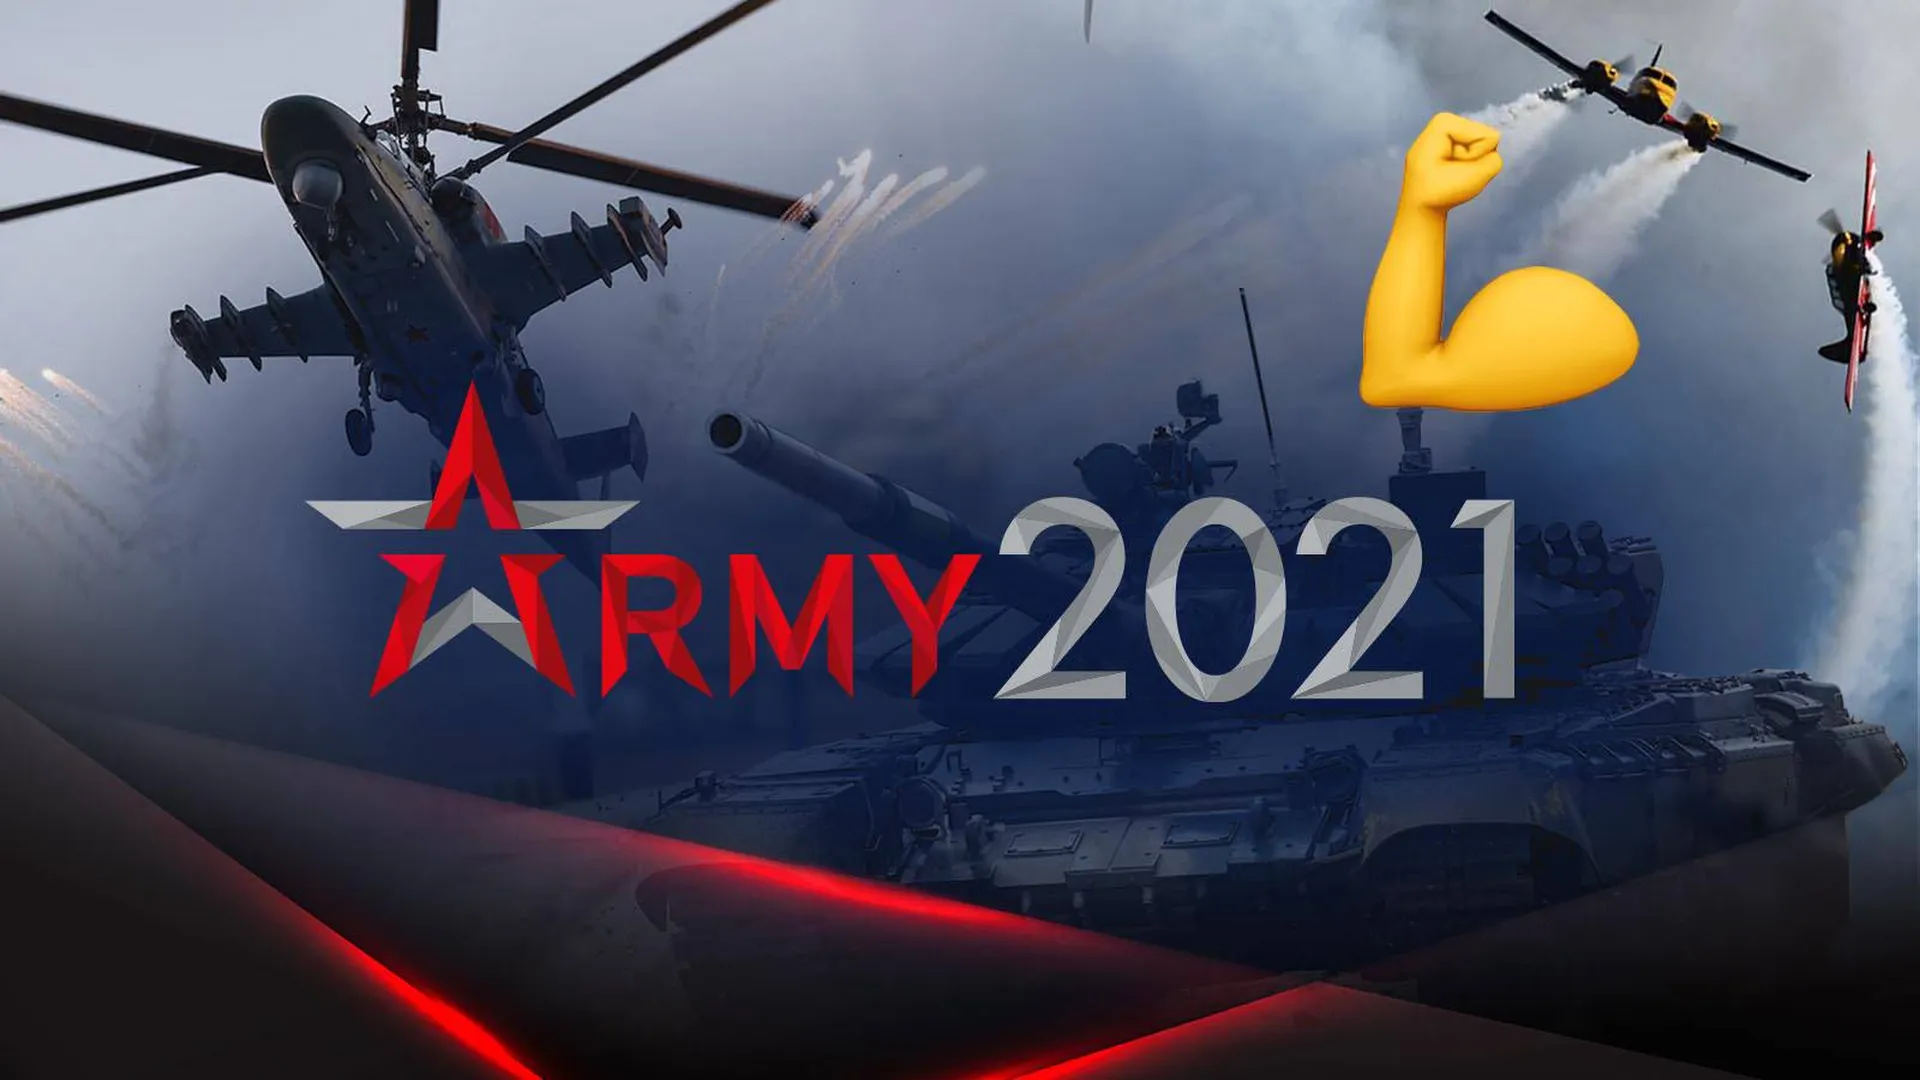 Вертолеты в небе и логотип военного форума "Армия-2021"